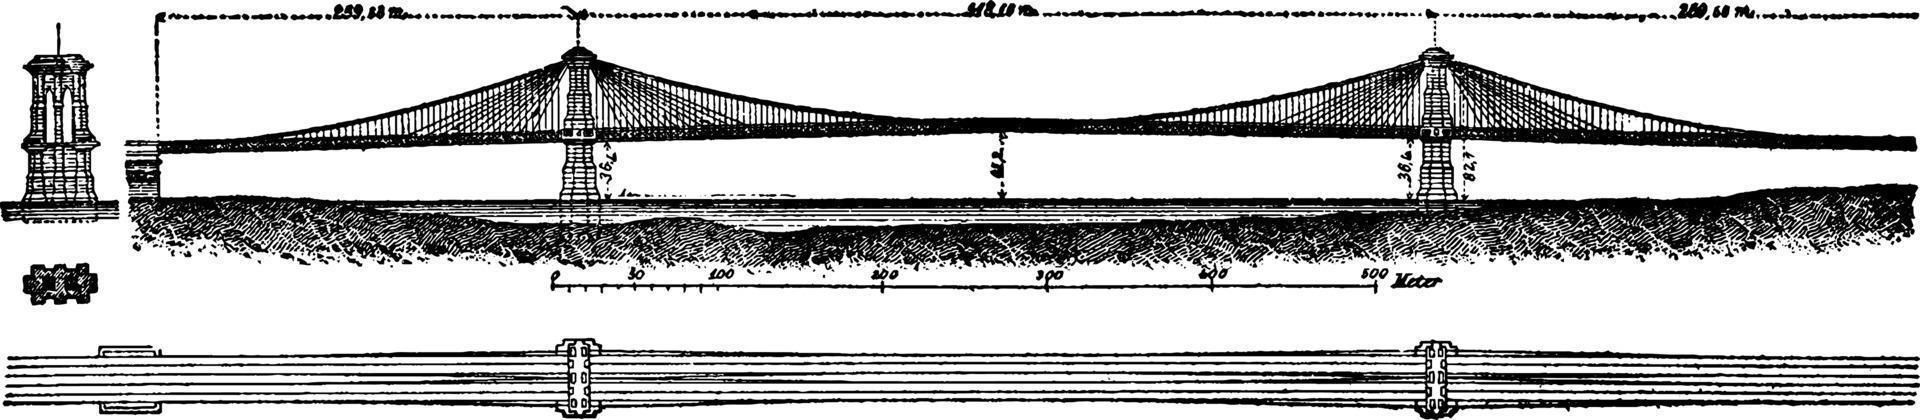 Hängebrücke, Vintage Illustration. vektor